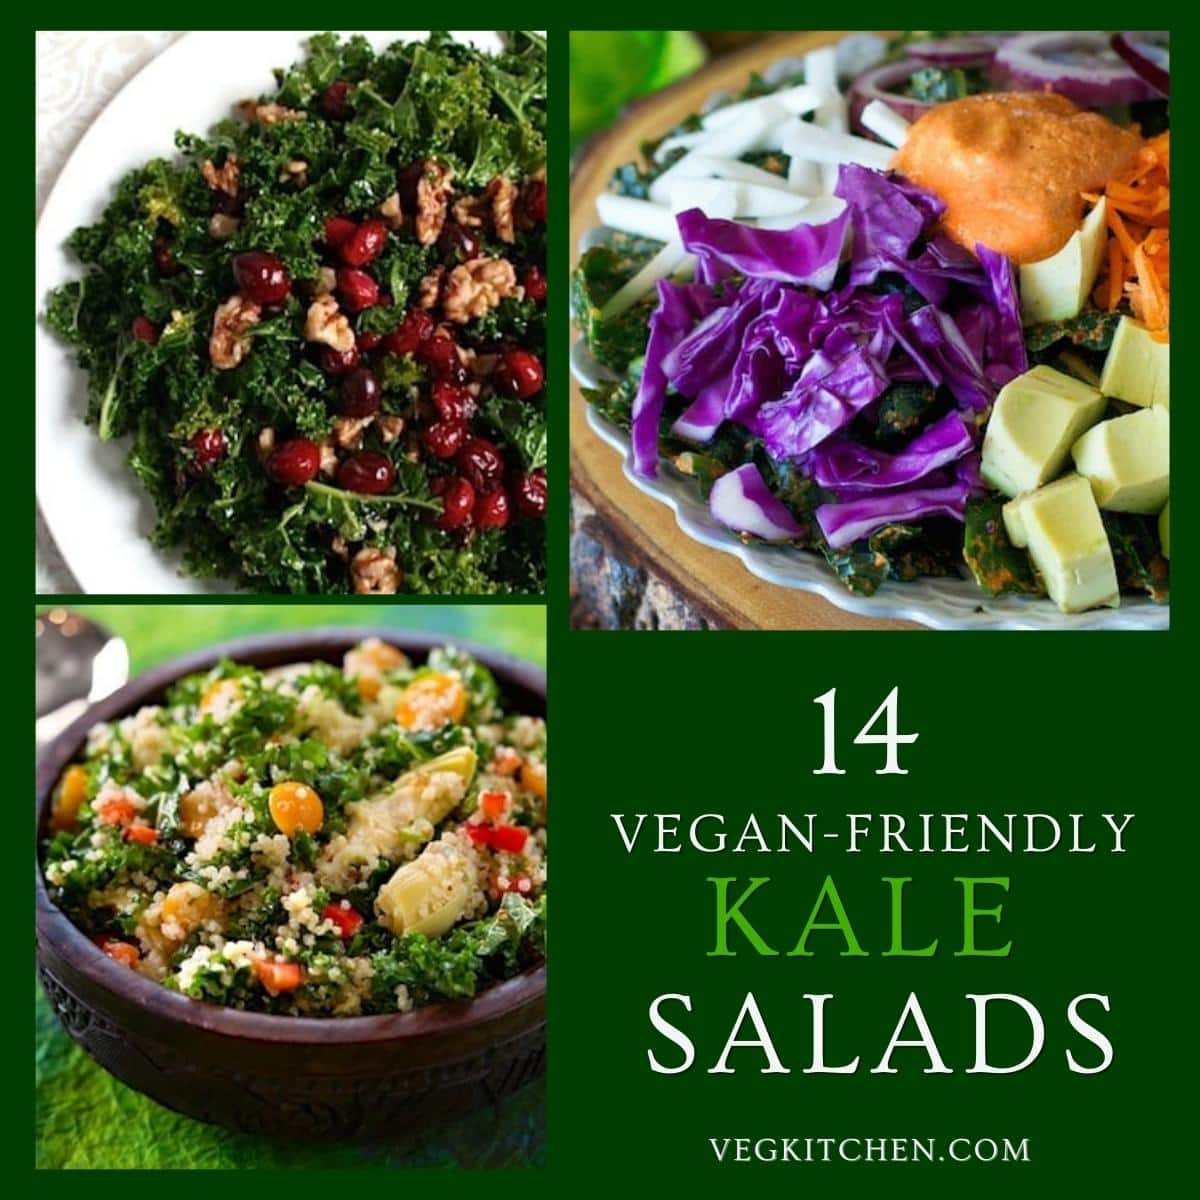 kale salad recipes